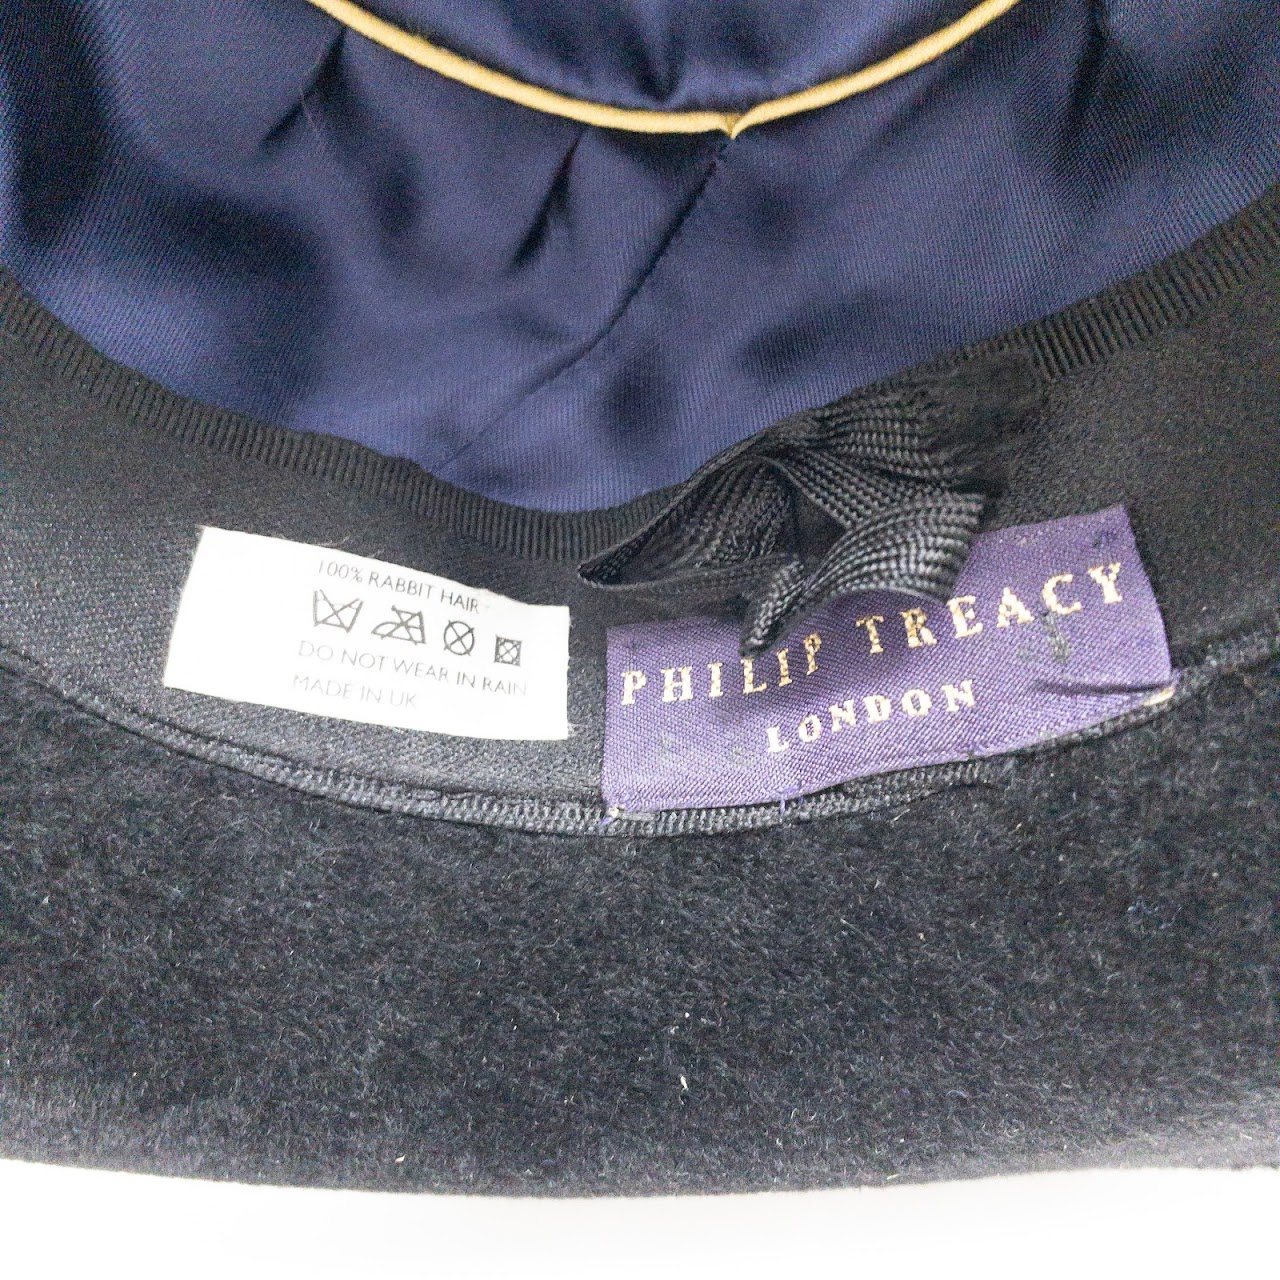 Philip Treacy Hat